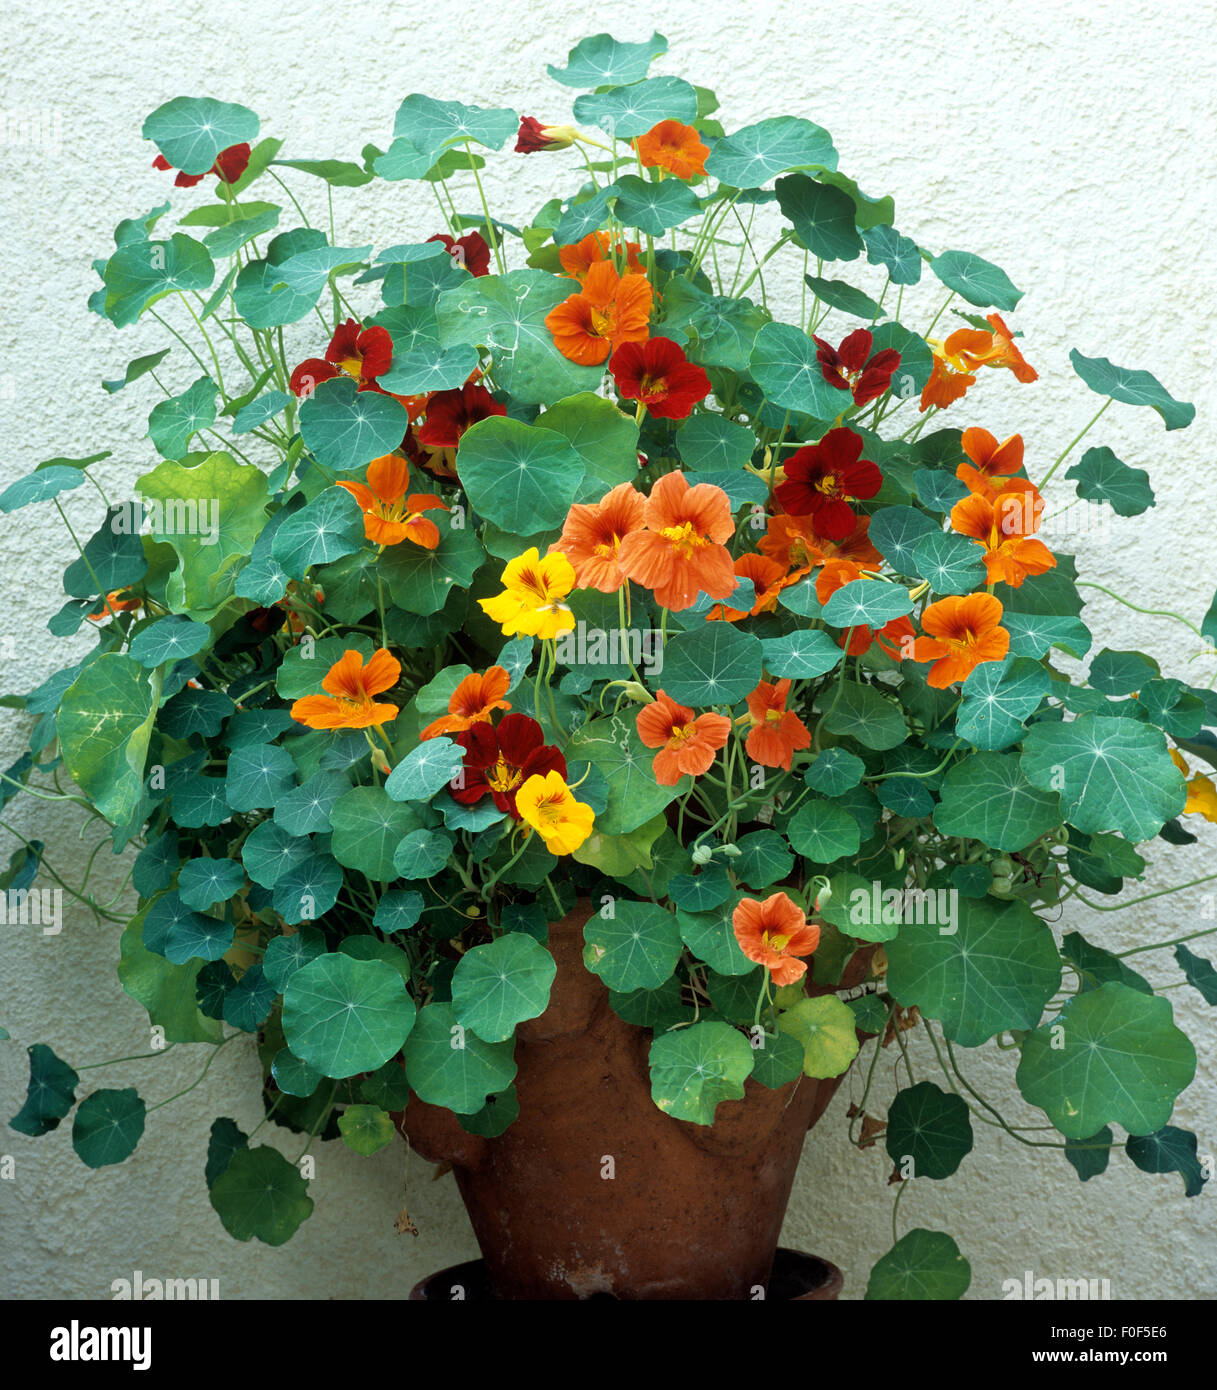 Kapuzinerkresse, Tropaeolum majus, Rankpflanze, Essblume, essbare Blumen,  Heilpflanzen Stock Photo - Alamy